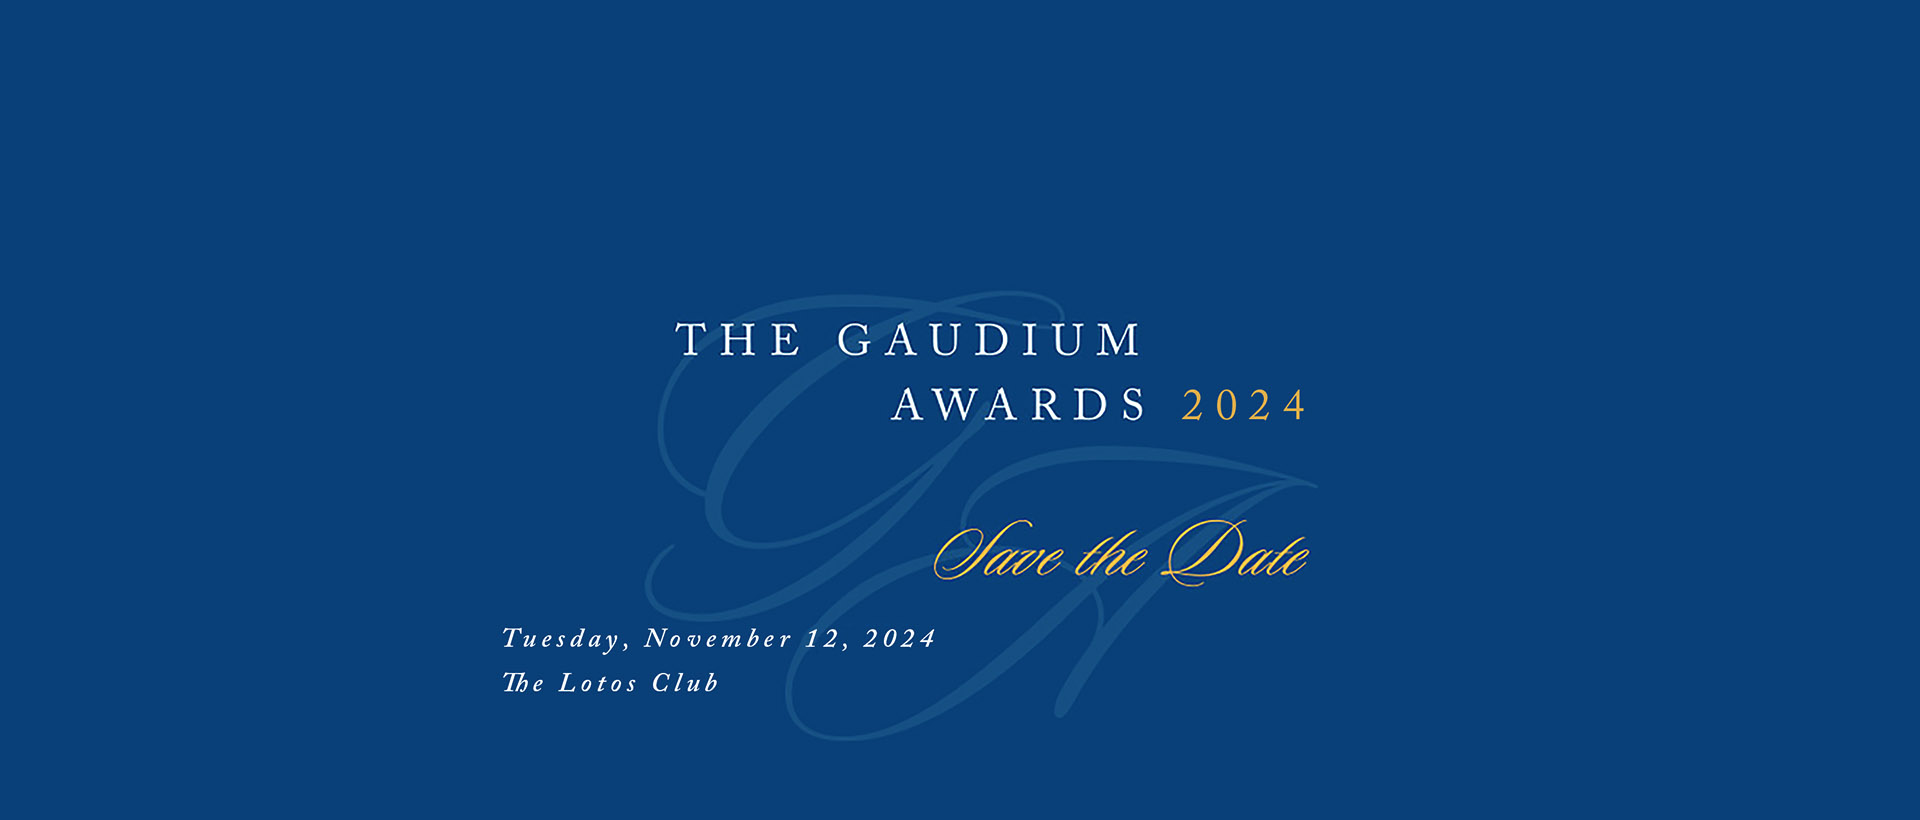 Gaudium Awards 2024